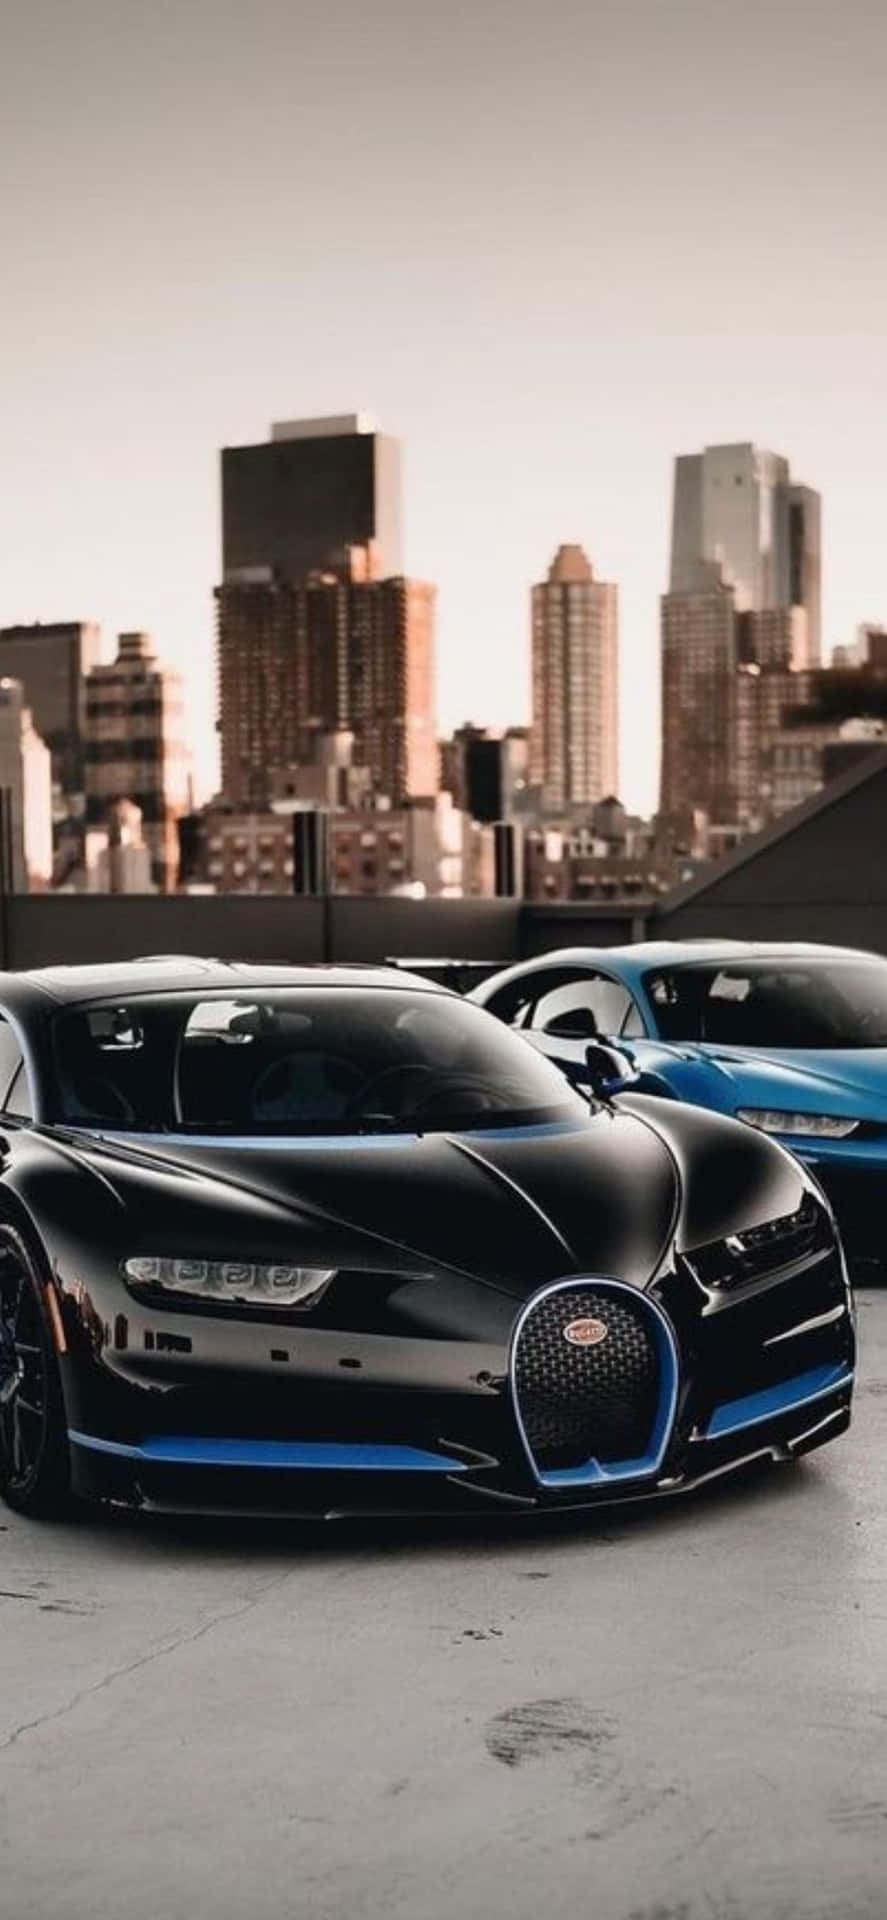 Elemblemático Bugatti Y El Innovador Iphone Xs Trabajando En Perfecta Armonía.